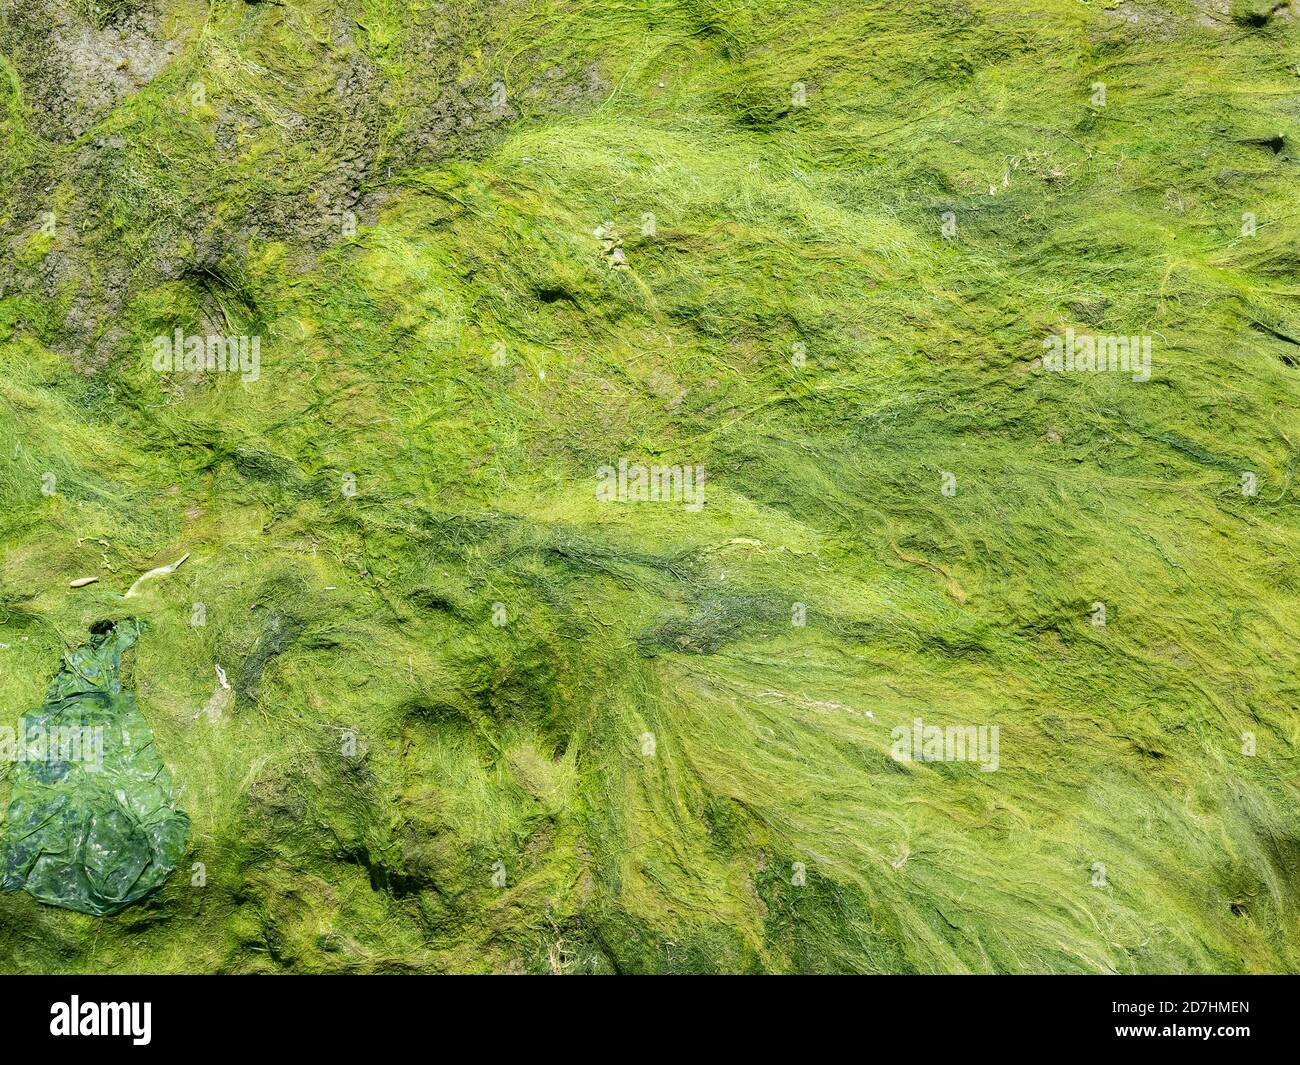 Un patrón de hebras de algas verde lima dejado atrás un río de marea Foto de stock